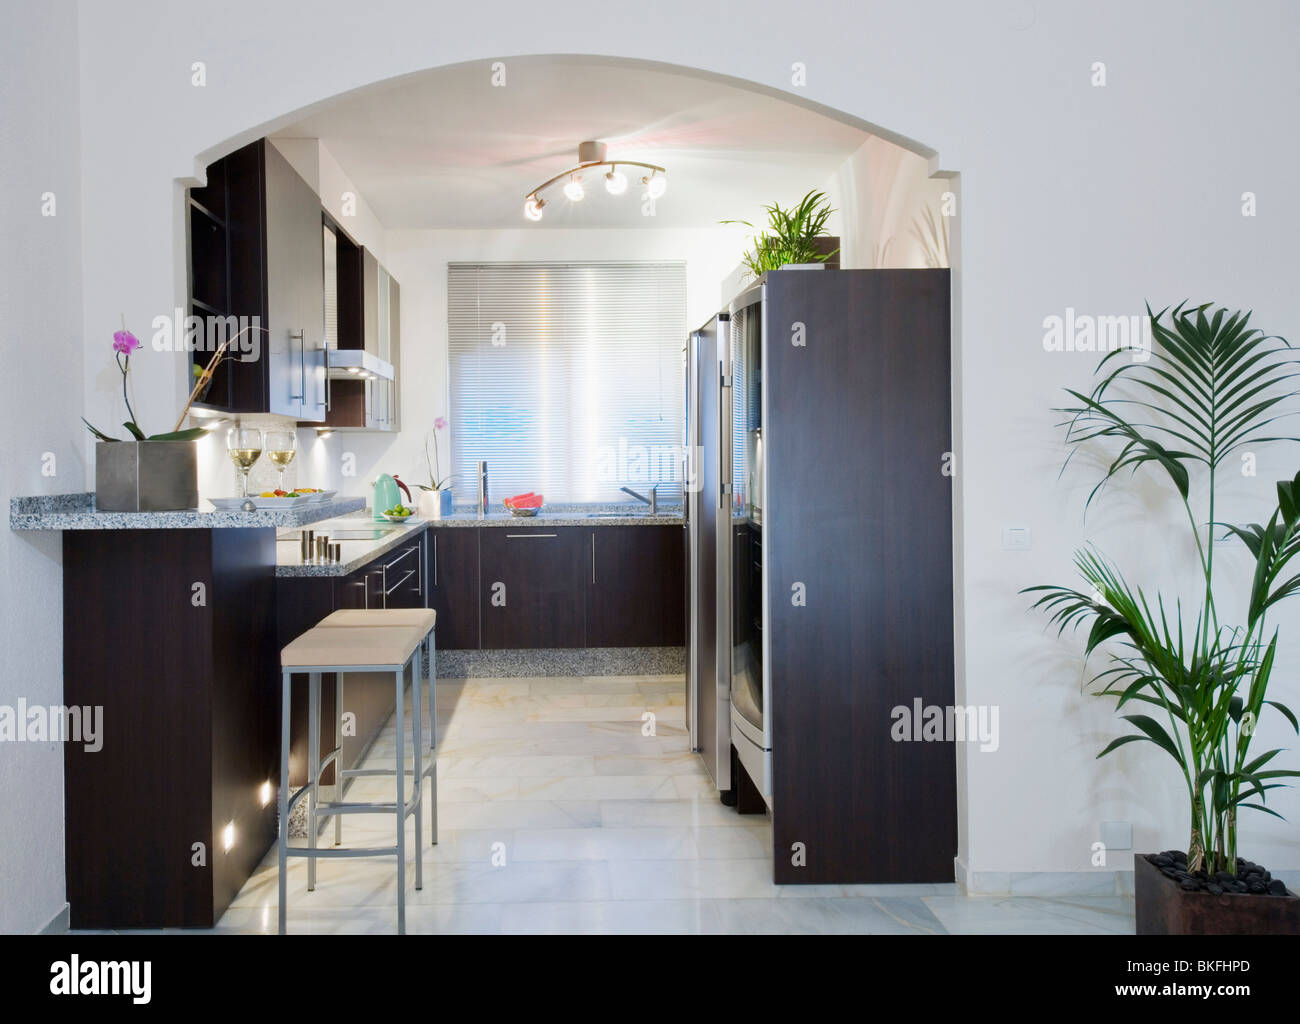 Zimmerpflanze neben Rundbogen, moderne weiße Küche mit Deckenstrahler und  schwarzen Einbauschränke und Einheiten Stockfotografie - Alamy